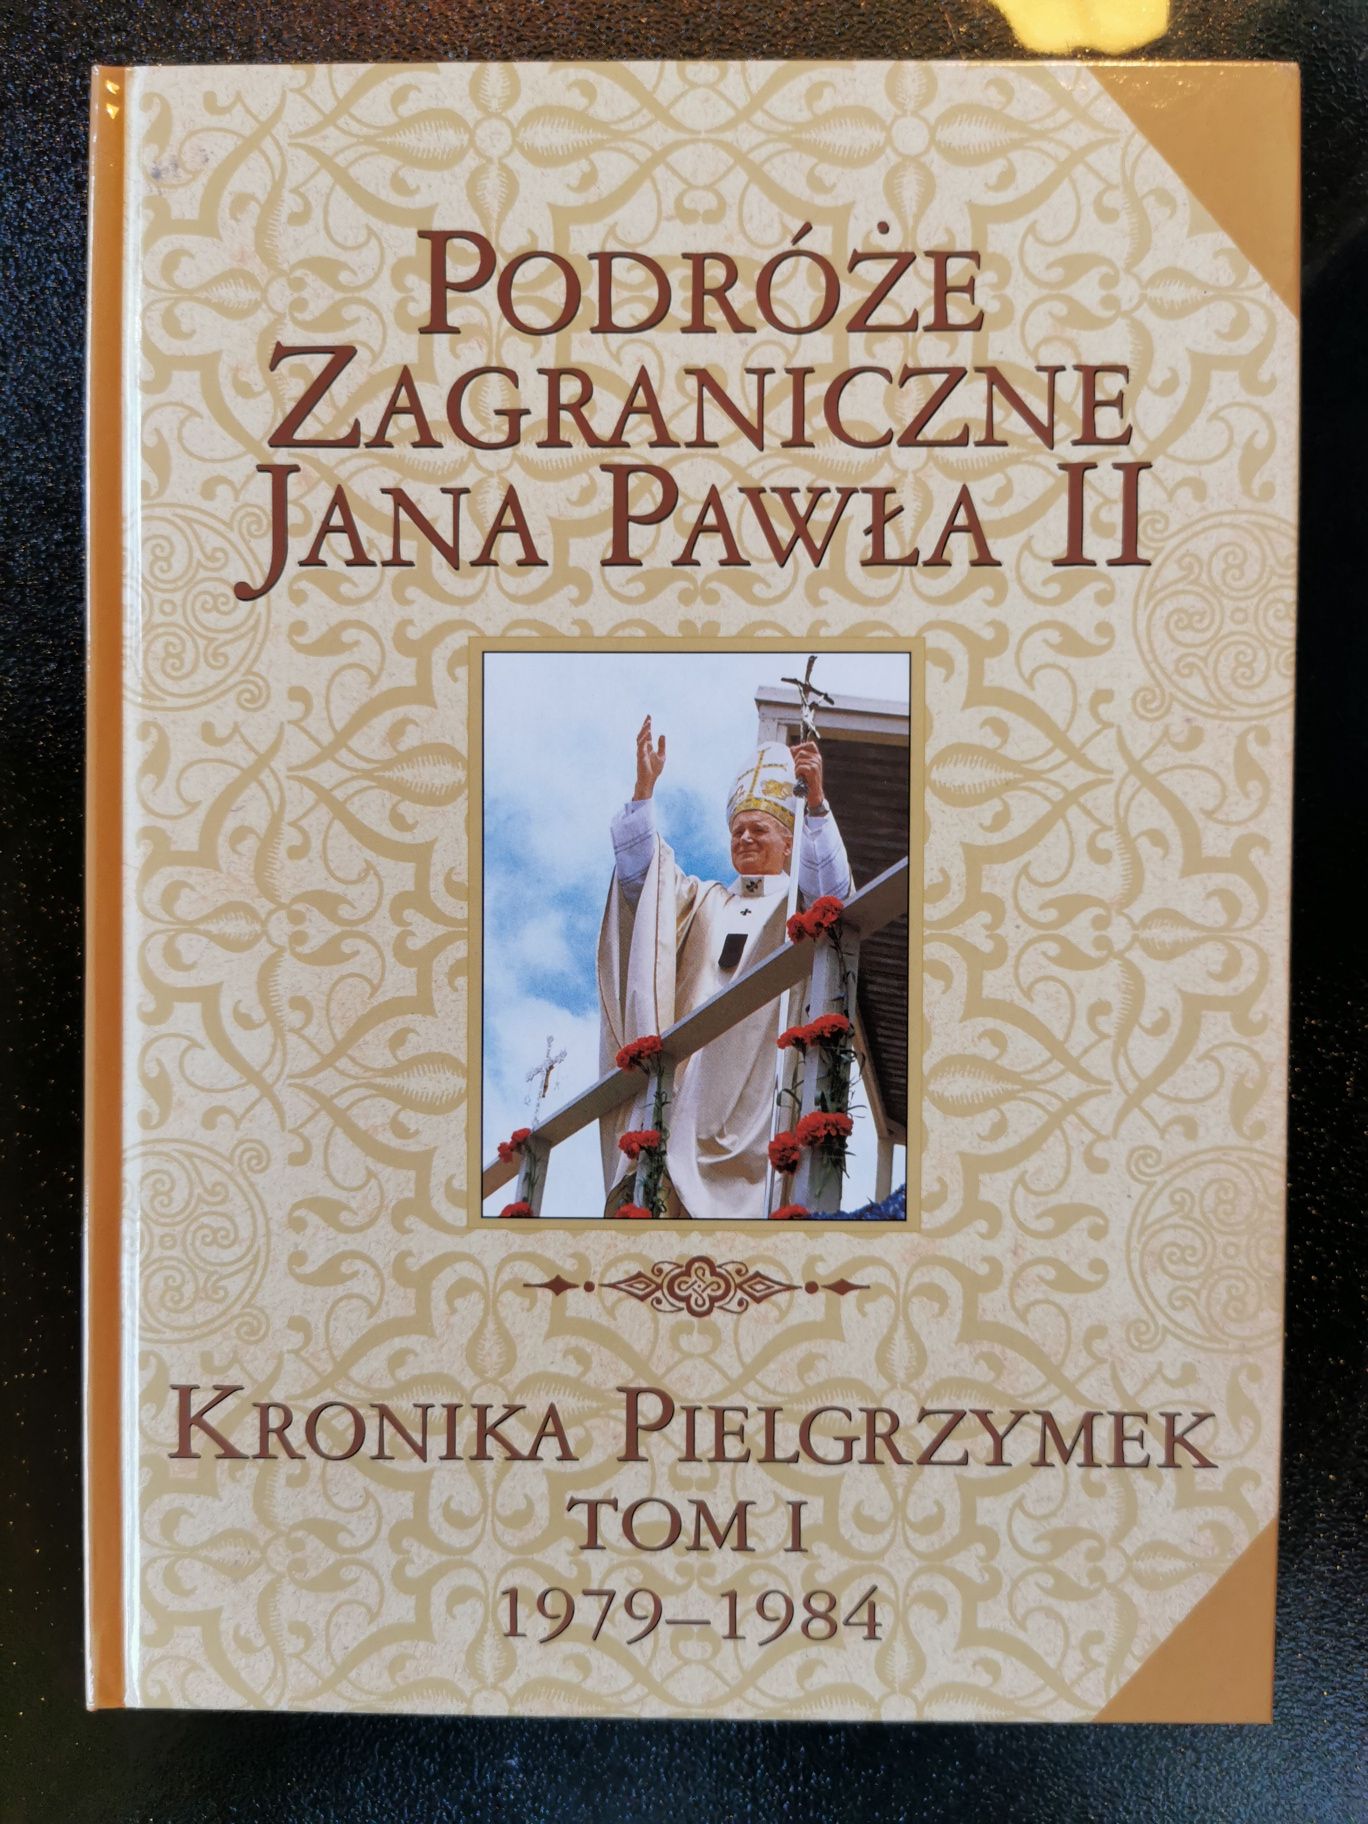 Wielka Encyklopedia Jana Pawła II tom 1-65 
Grzegorz Polak